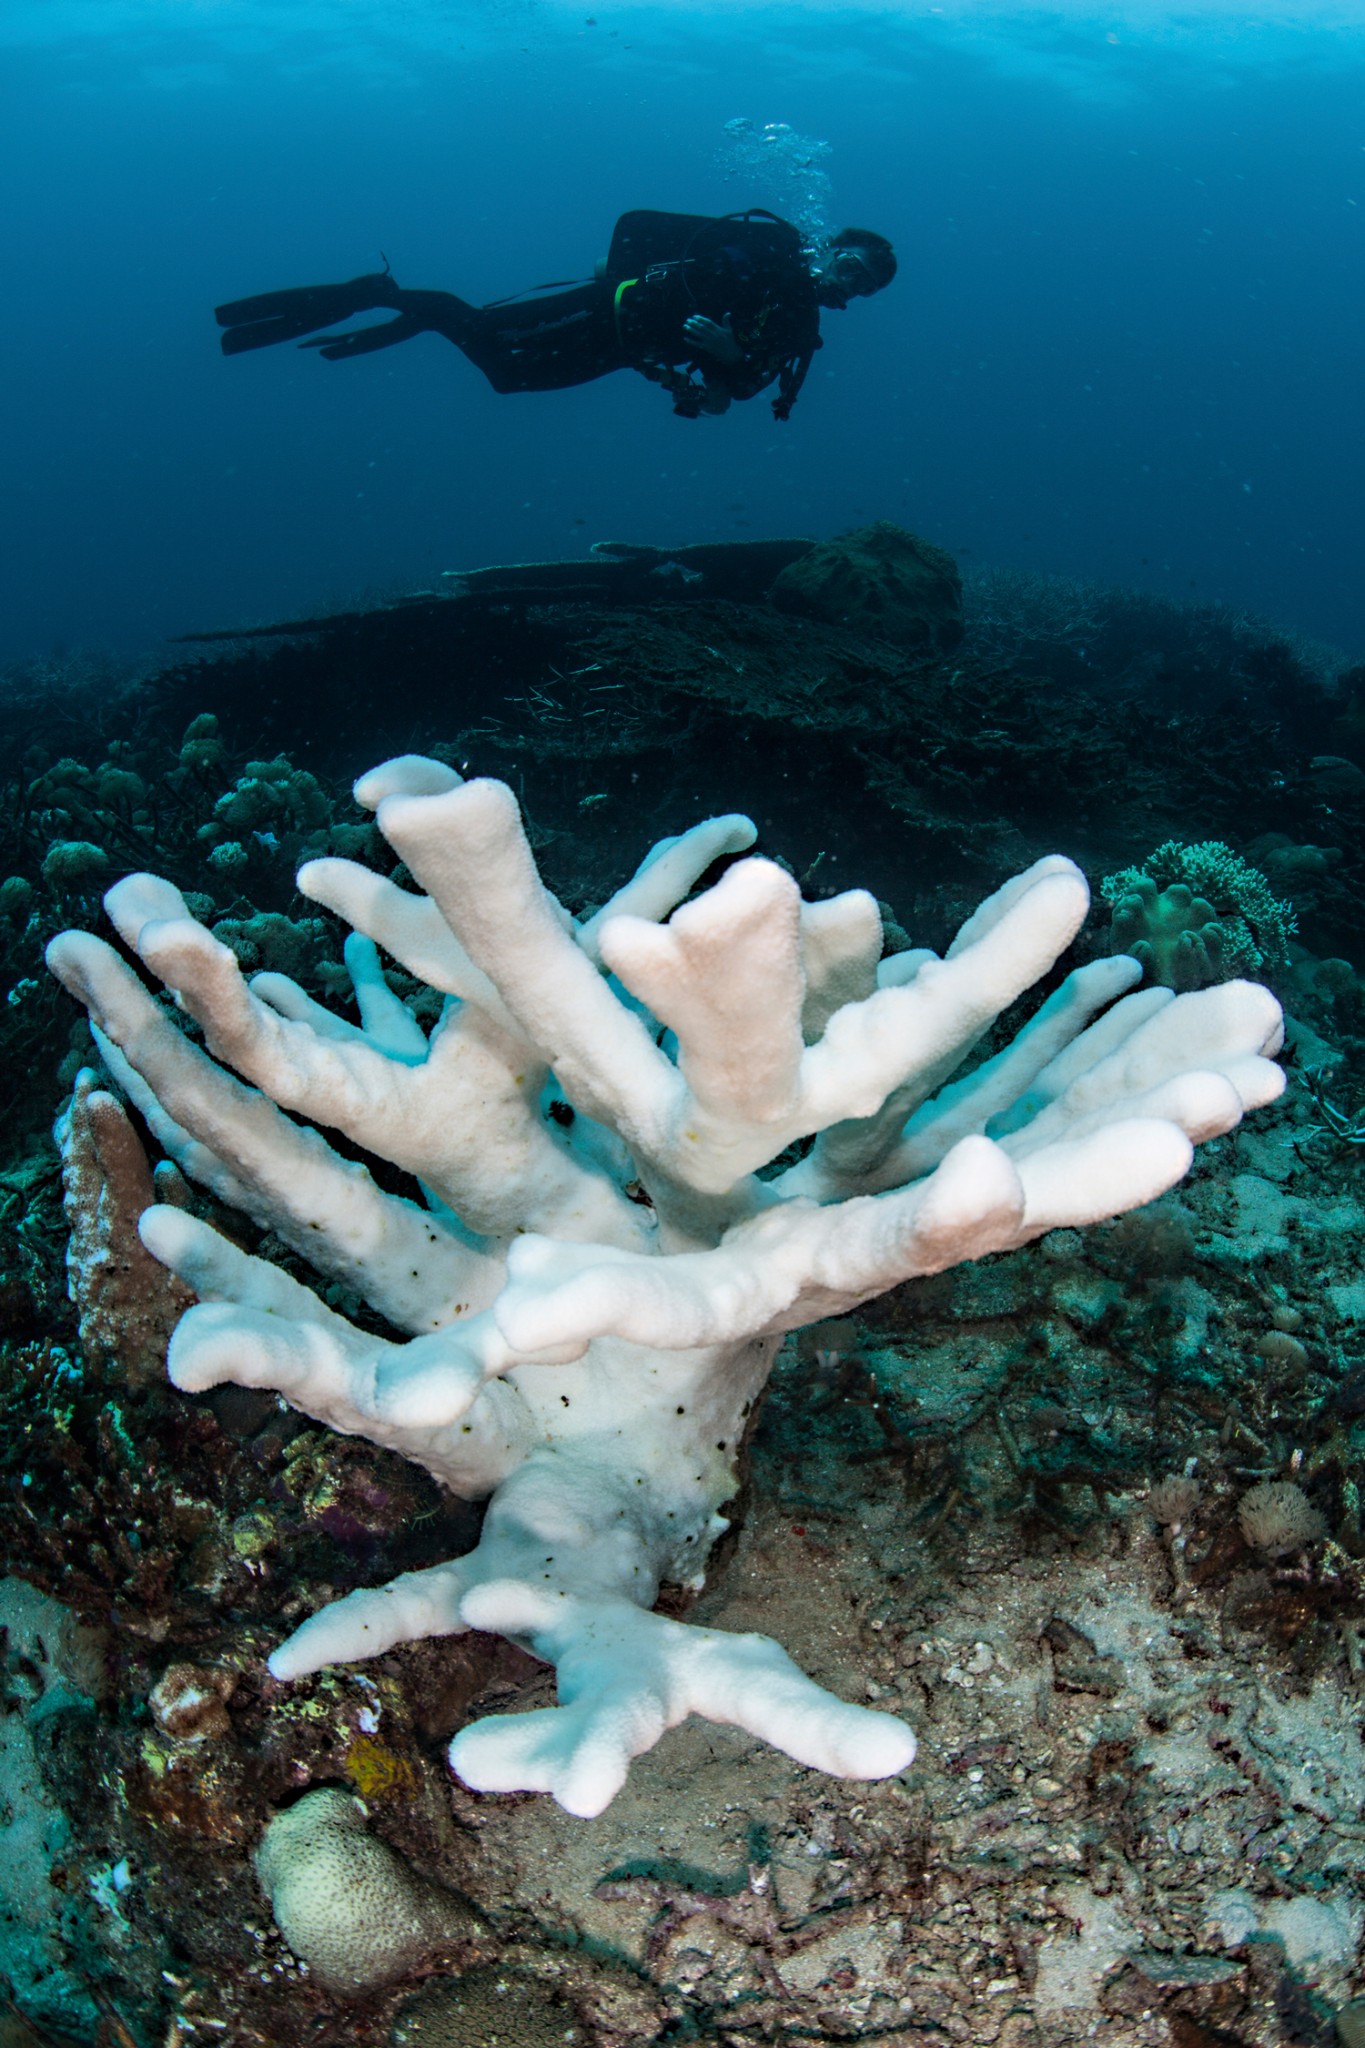 Coral branqueado por causa do aquecimento do oceano